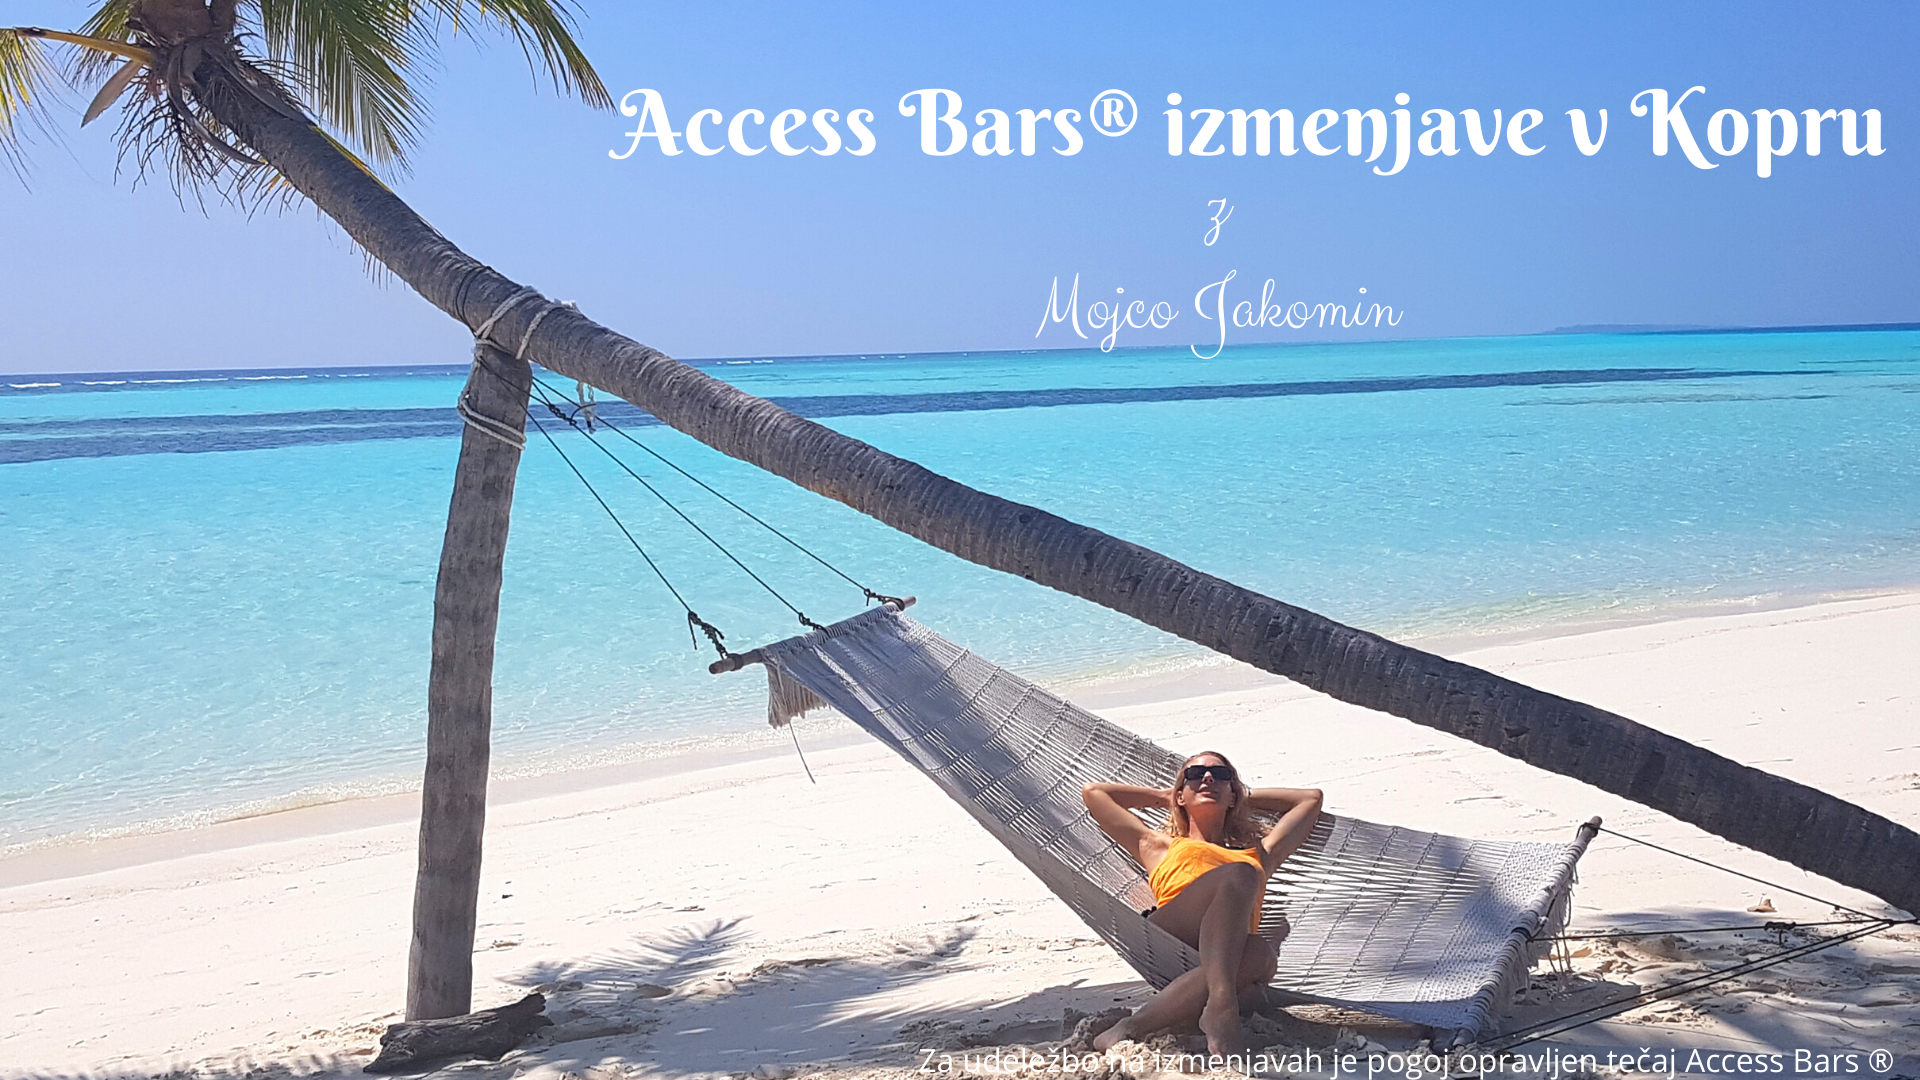 Access Bars® izmenjave v Kopru